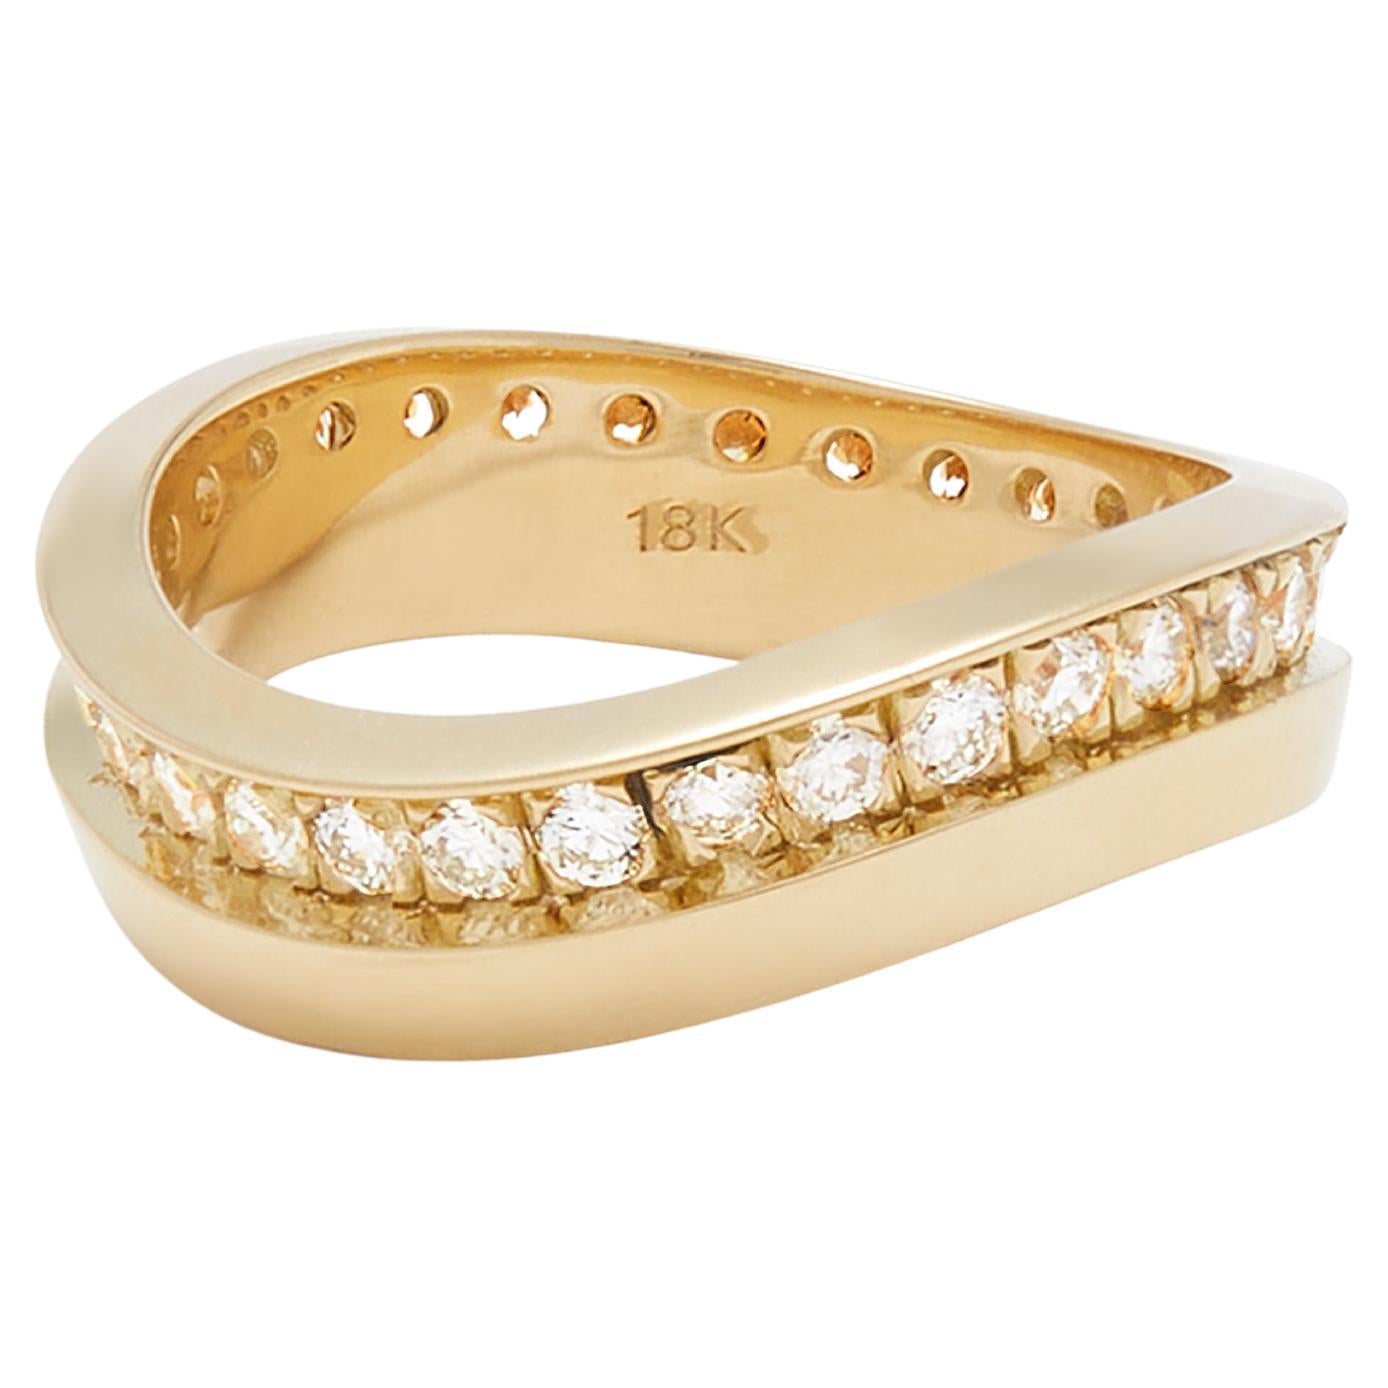 Casey Perez Gestufter Stapelbarer Ring aus 18 Karat Gold und Diamant Wave Band - Größe 6